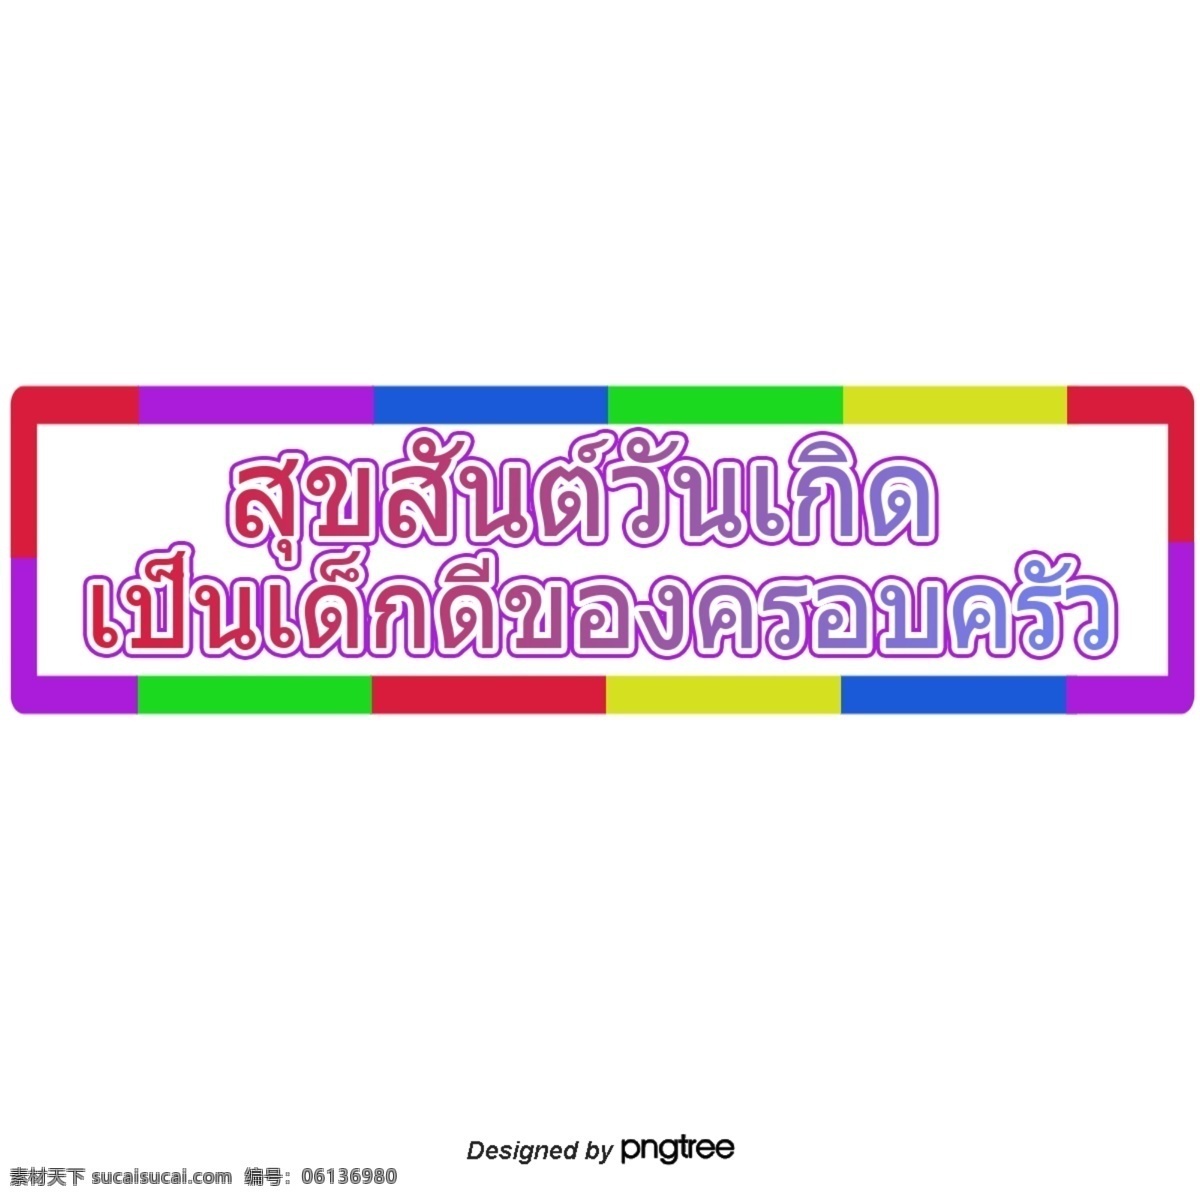 方形 字体 多样 色彩 鲜艳 泰国 一个 很 好 家庭 生日 快乐 明亮 颜色 红色 矩形 不同